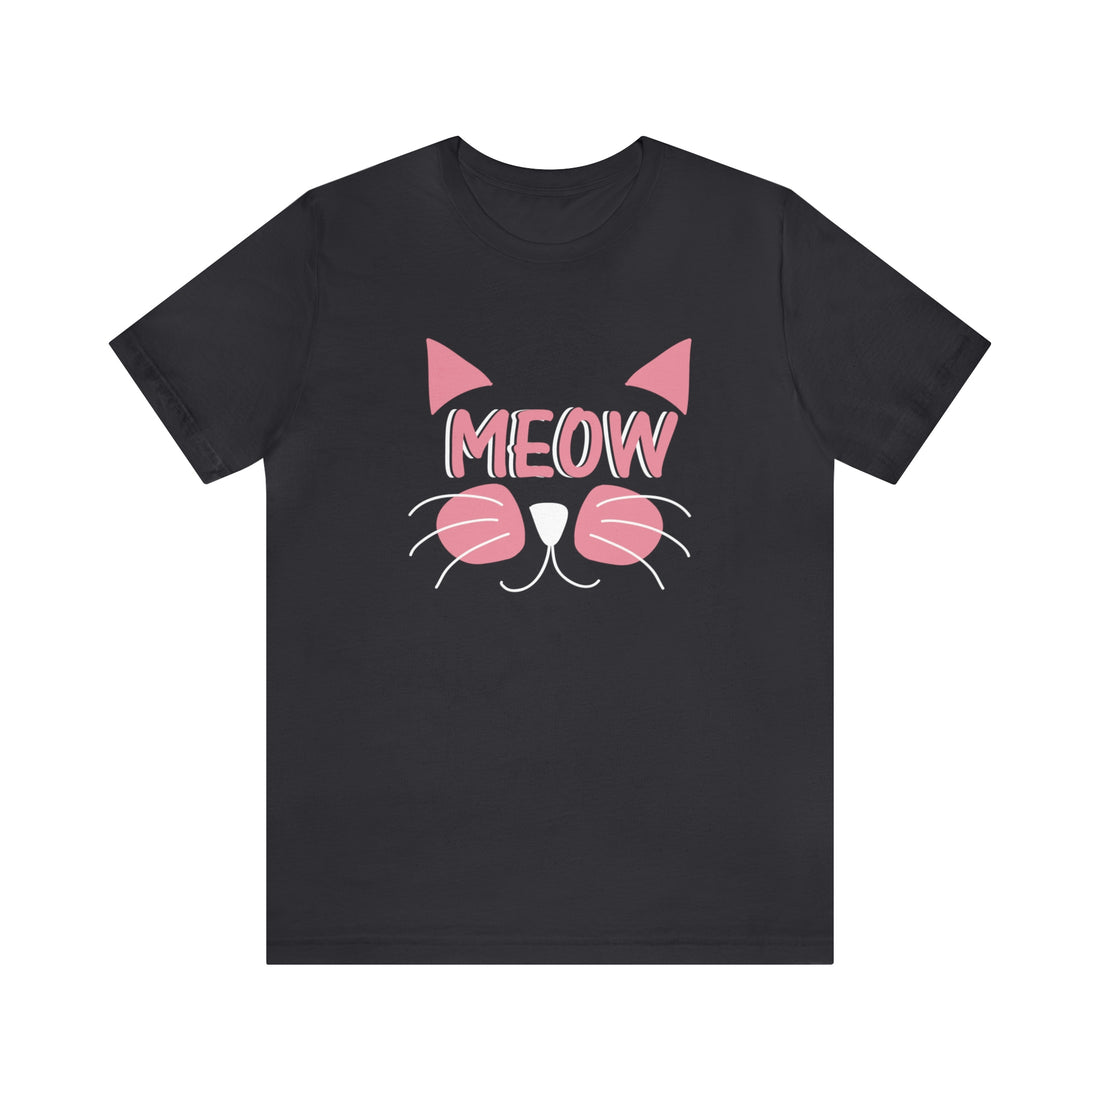 Meow - Unisex Jersey Short Sleeve Tee